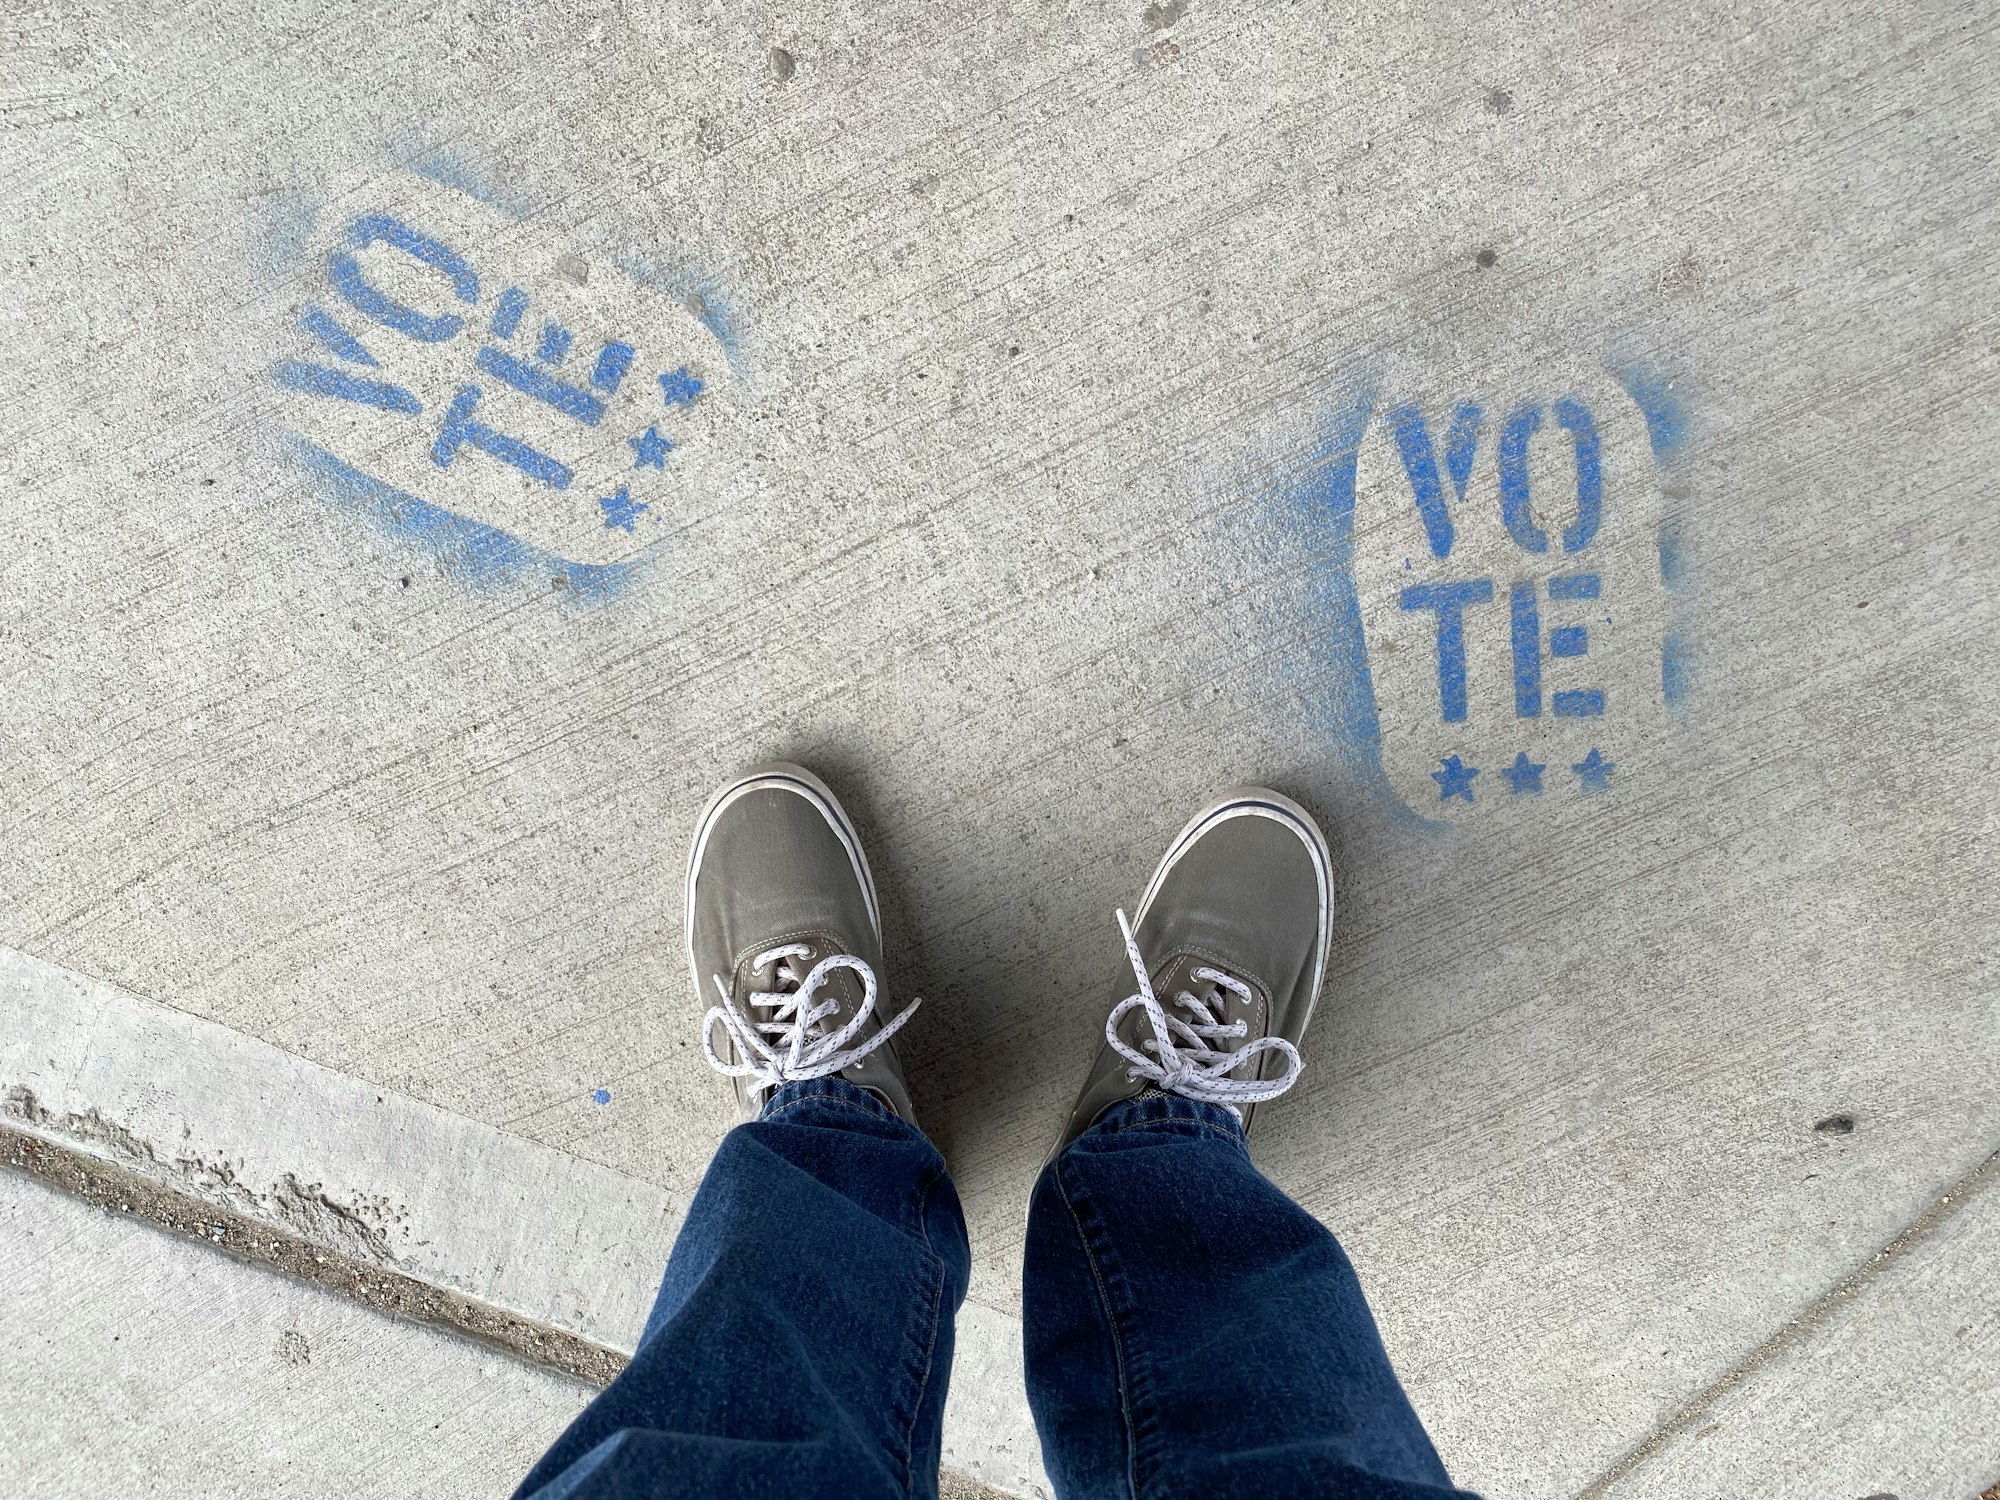 VOTE! Sidewalk art